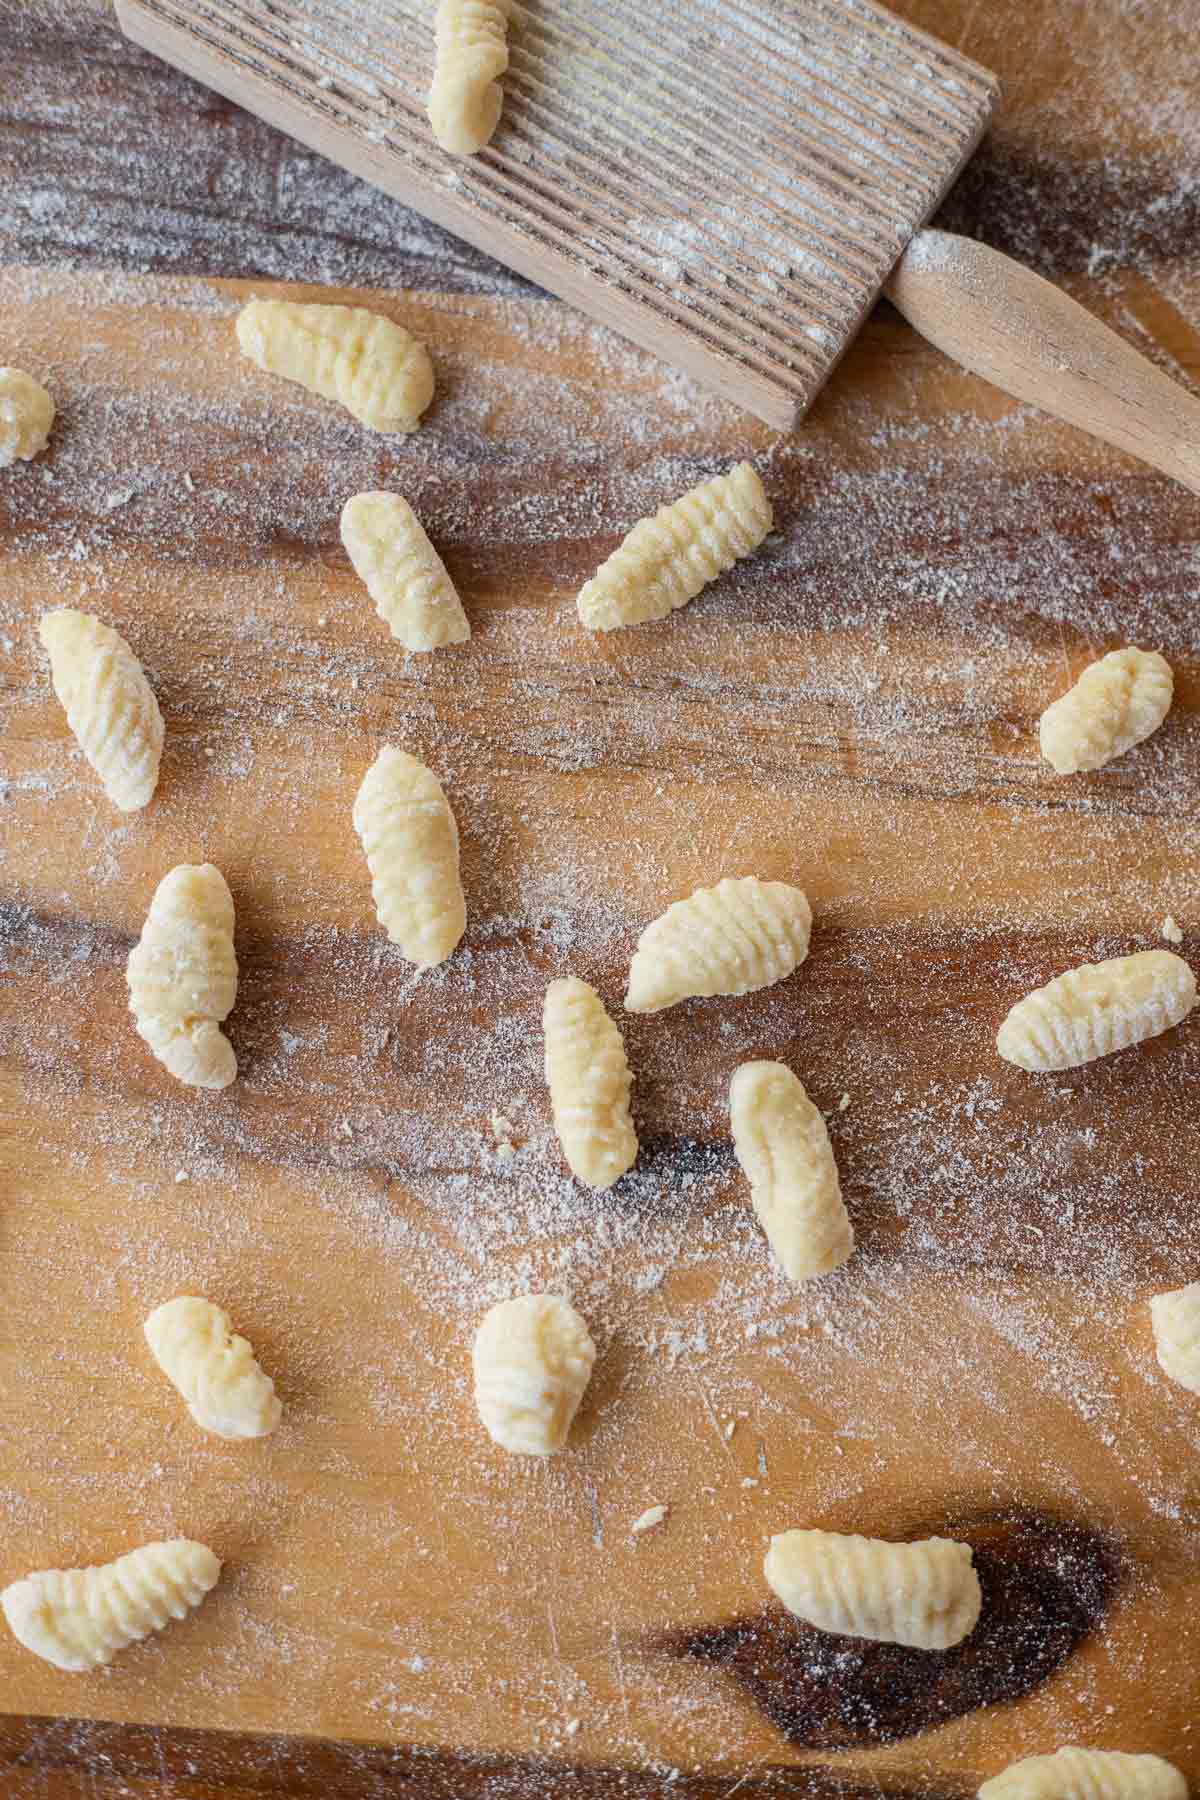 Italian potato pasta / gnocchi on a cutting board